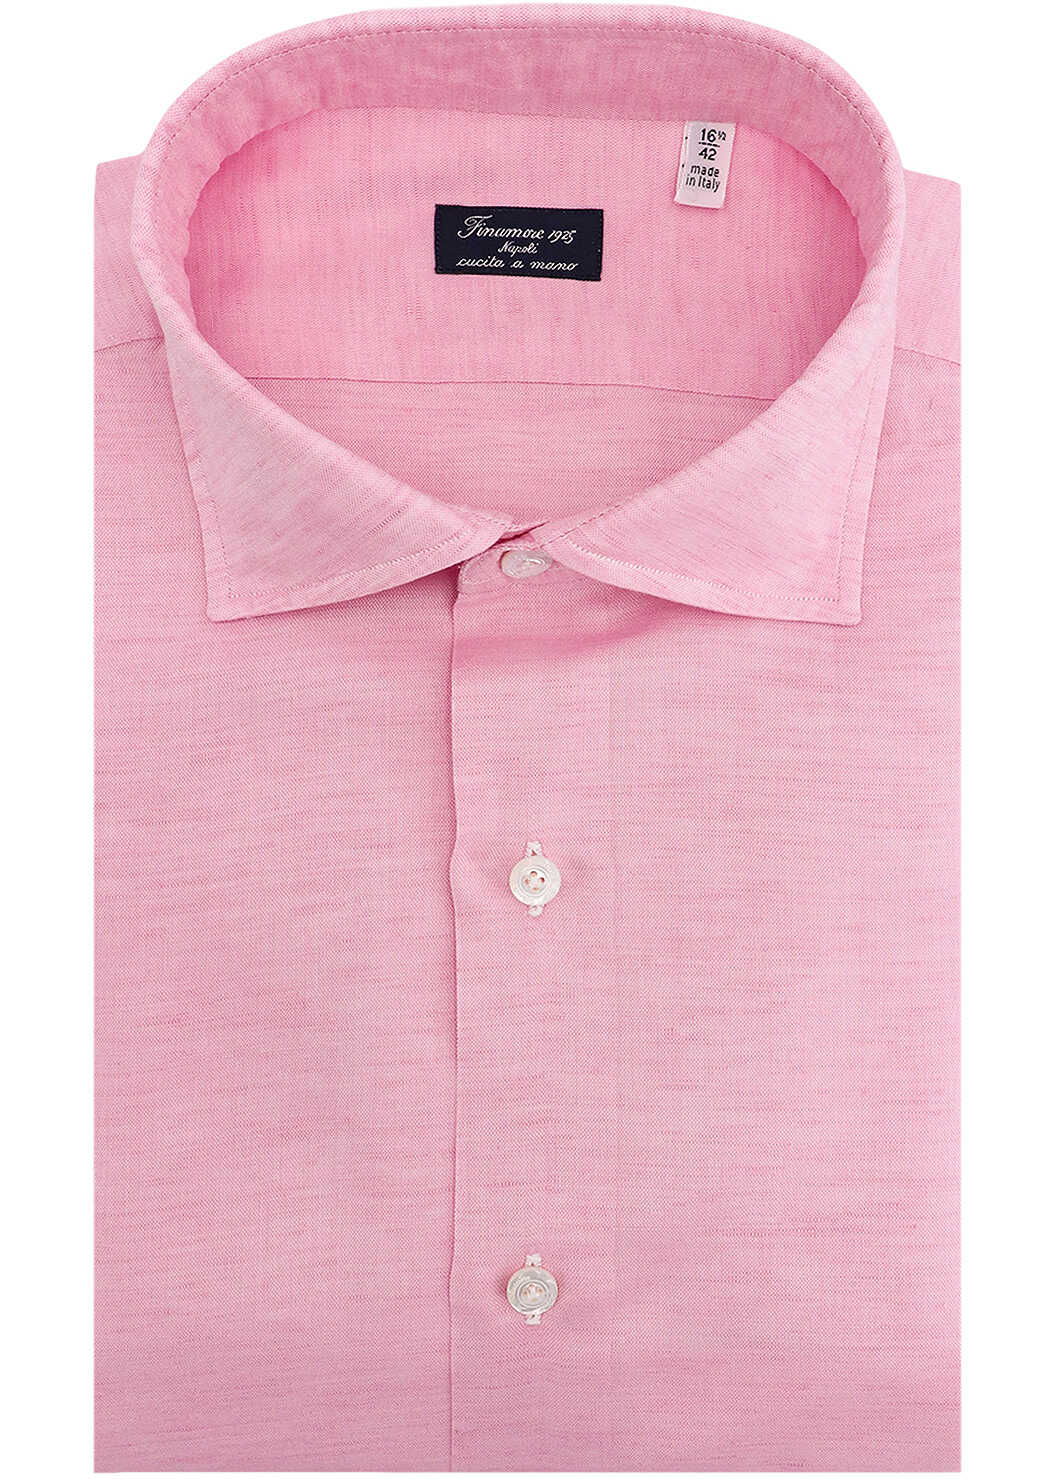 FINAMORE Shirt Pink